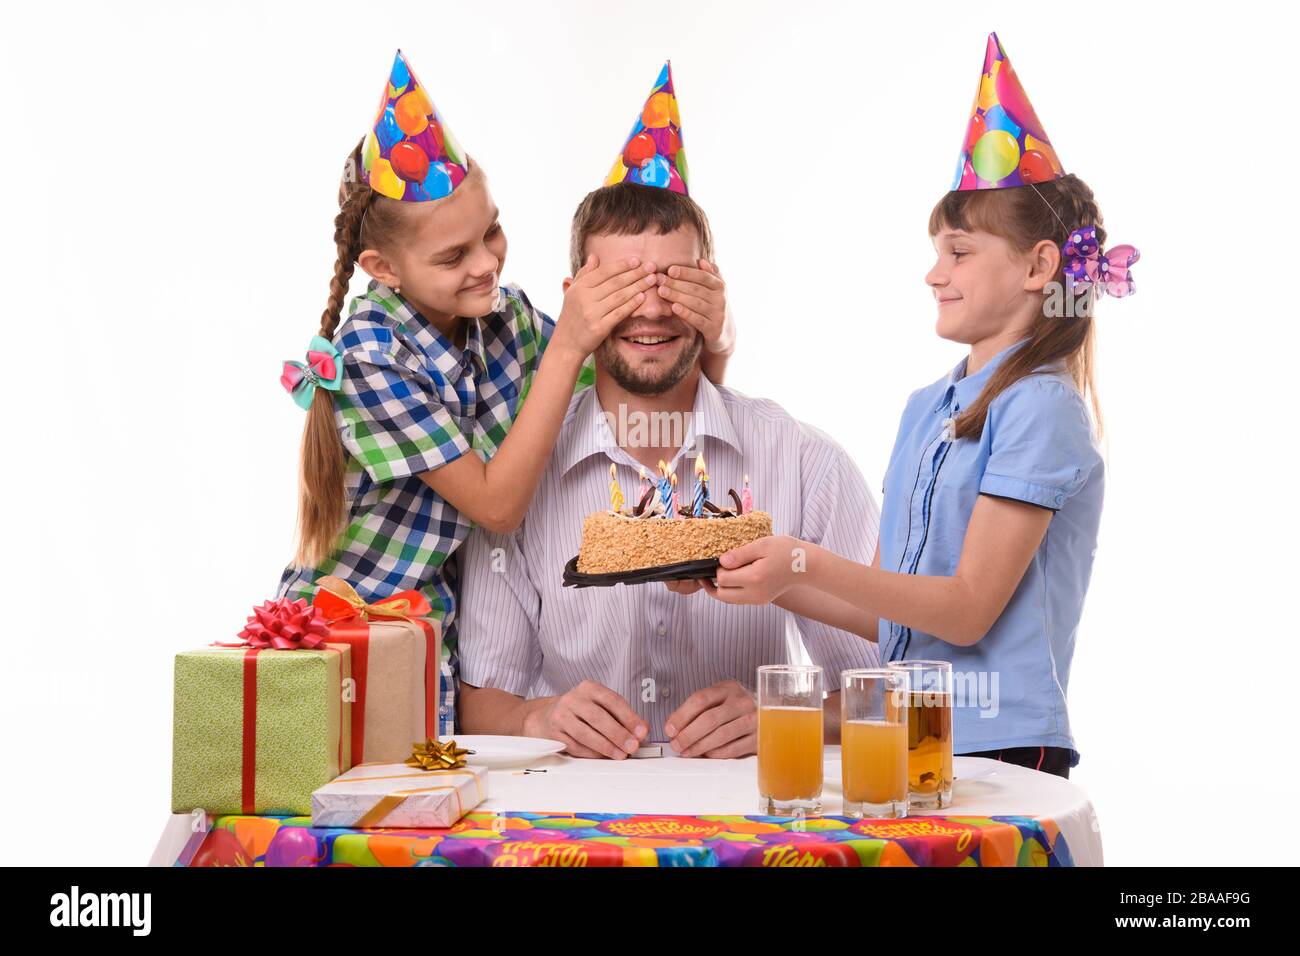 Les enfants donnent une douce surprise à leur père lors d'une fête d'anniversaire Banque D'Images